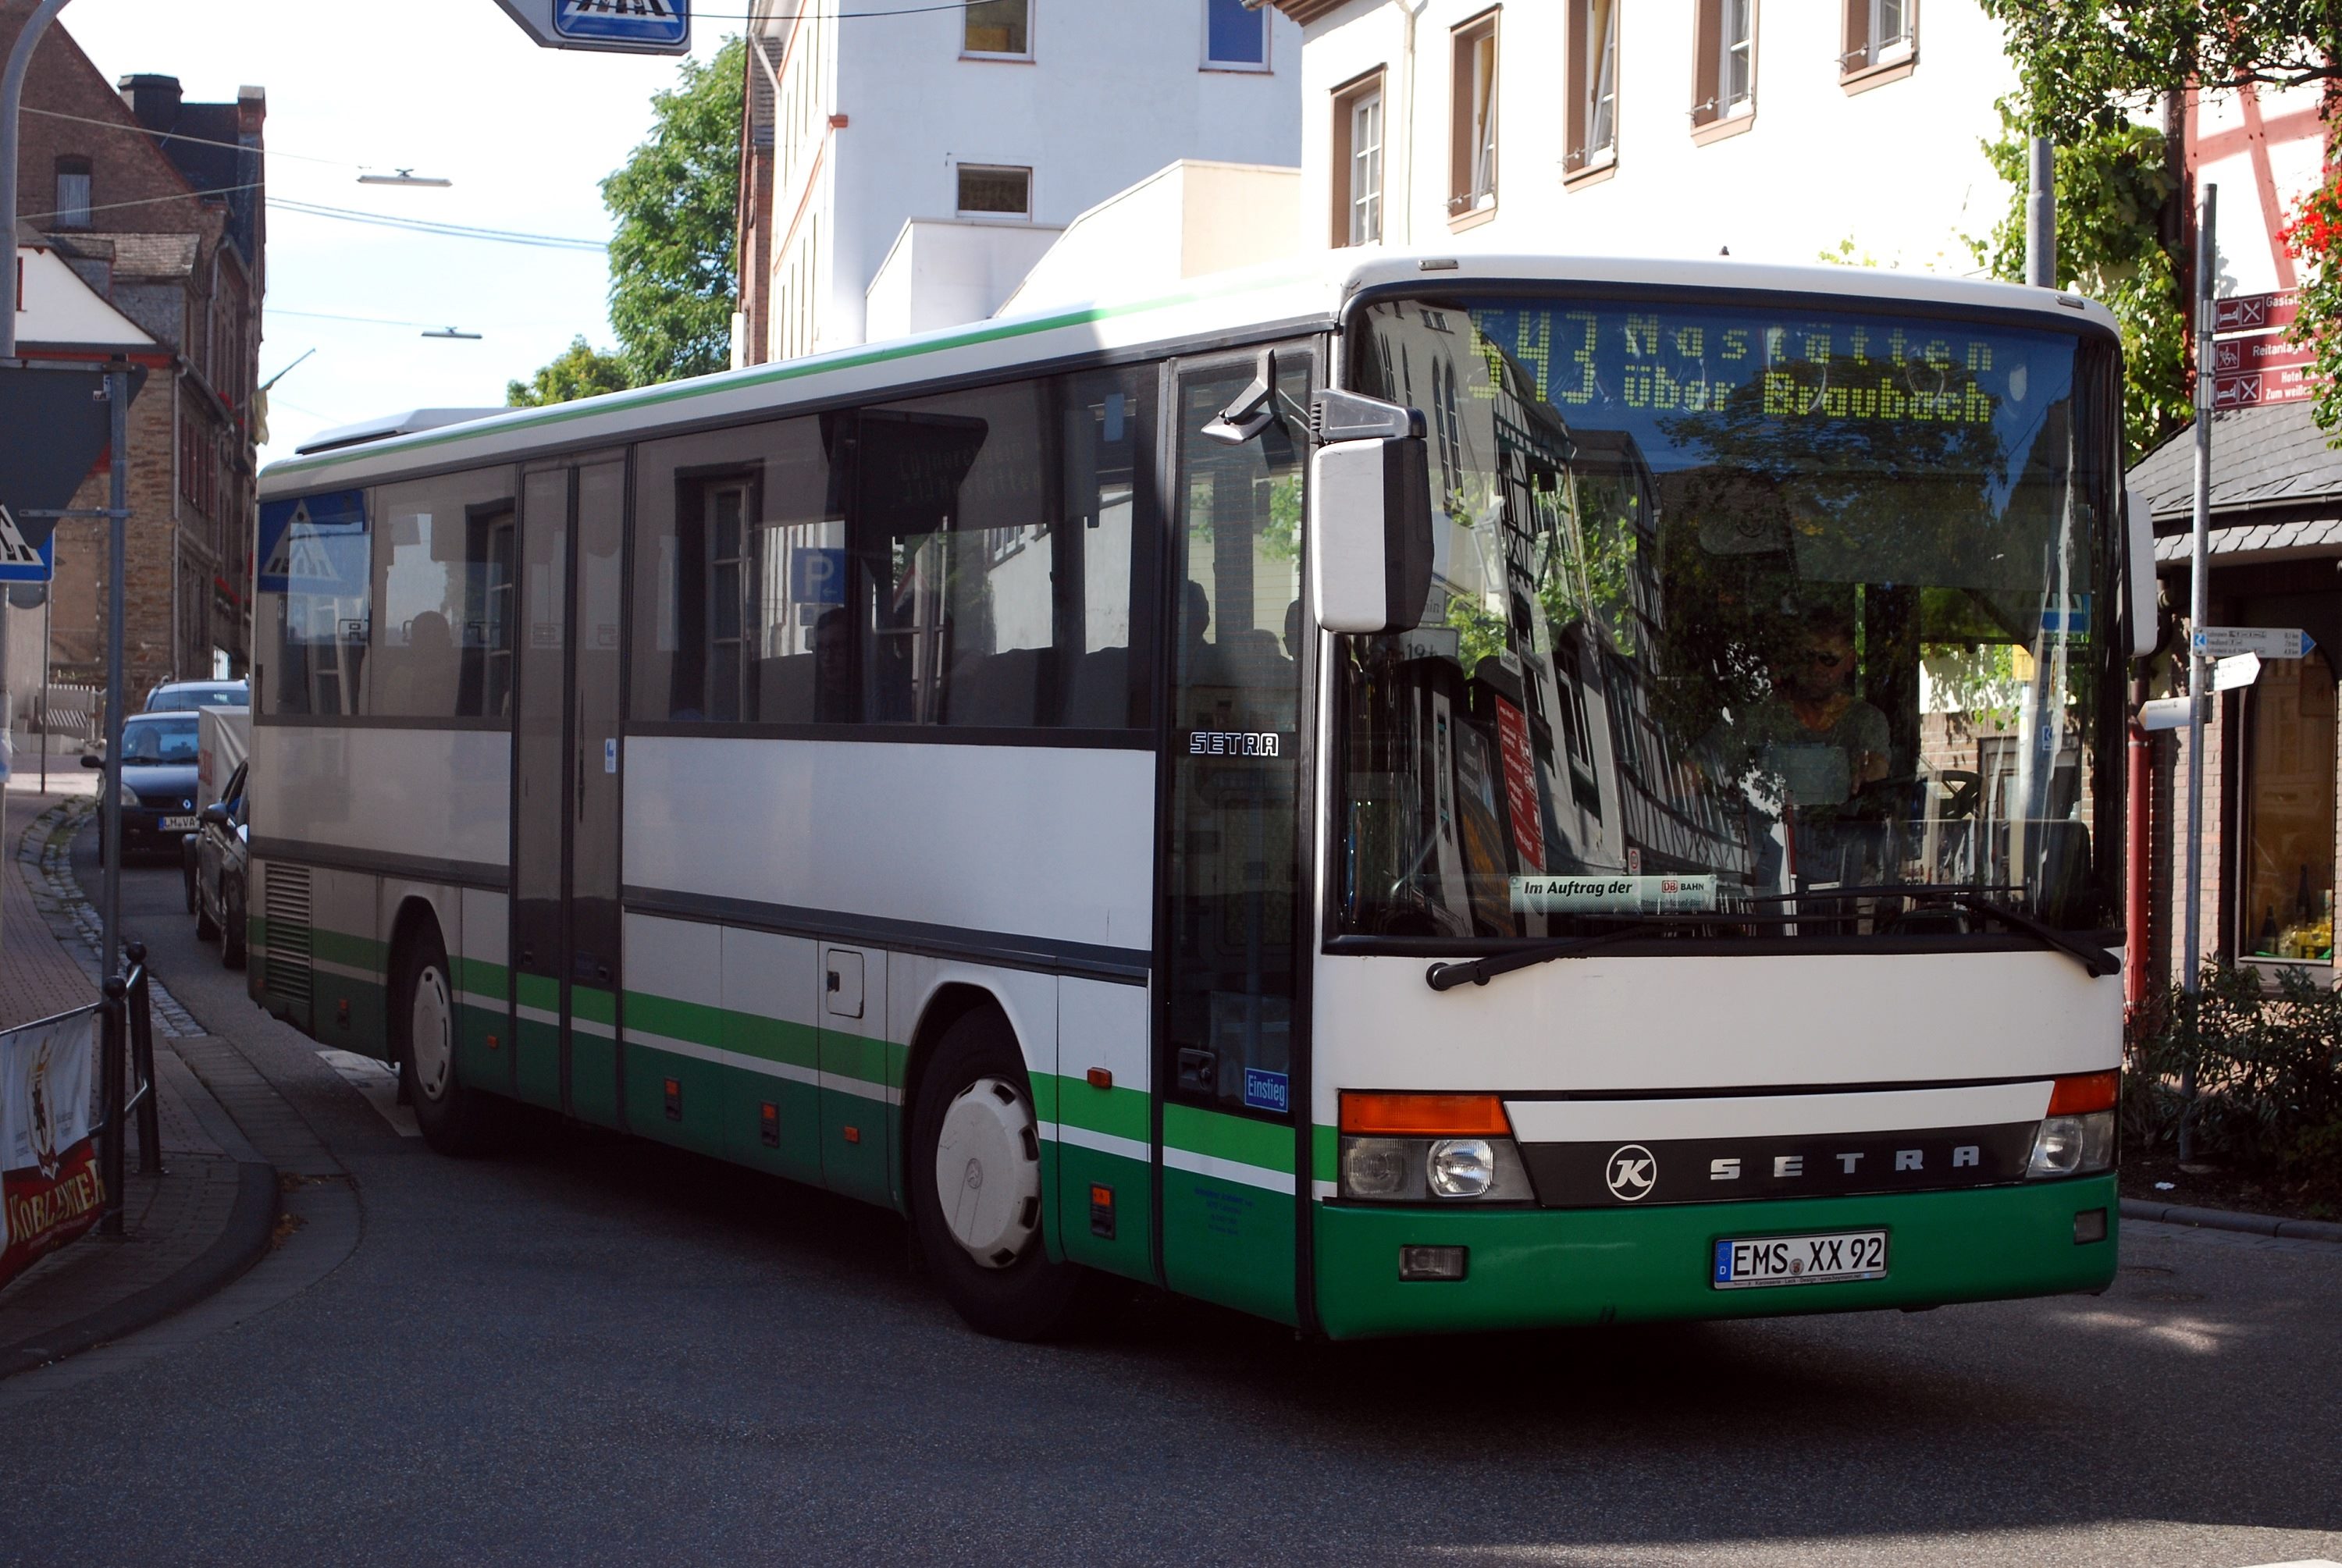 543 Nastätten-Busbahnhof Braubach Bf